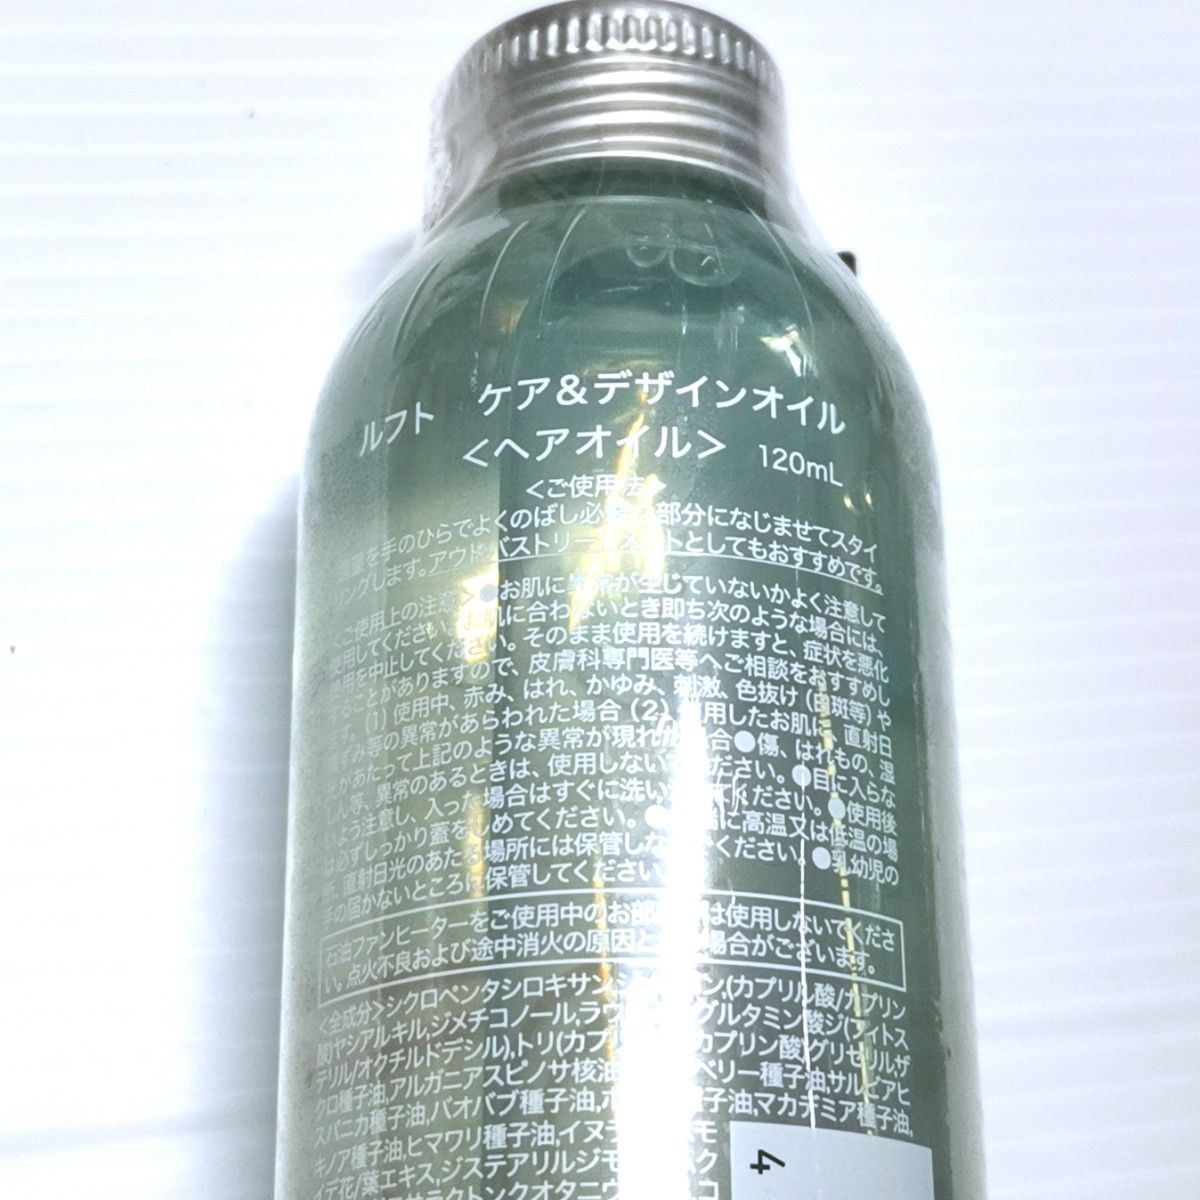 【120ml】LUFT care & design -hair OIL- /ケア&デザインオイル シトラスマリンフローラルの香り 